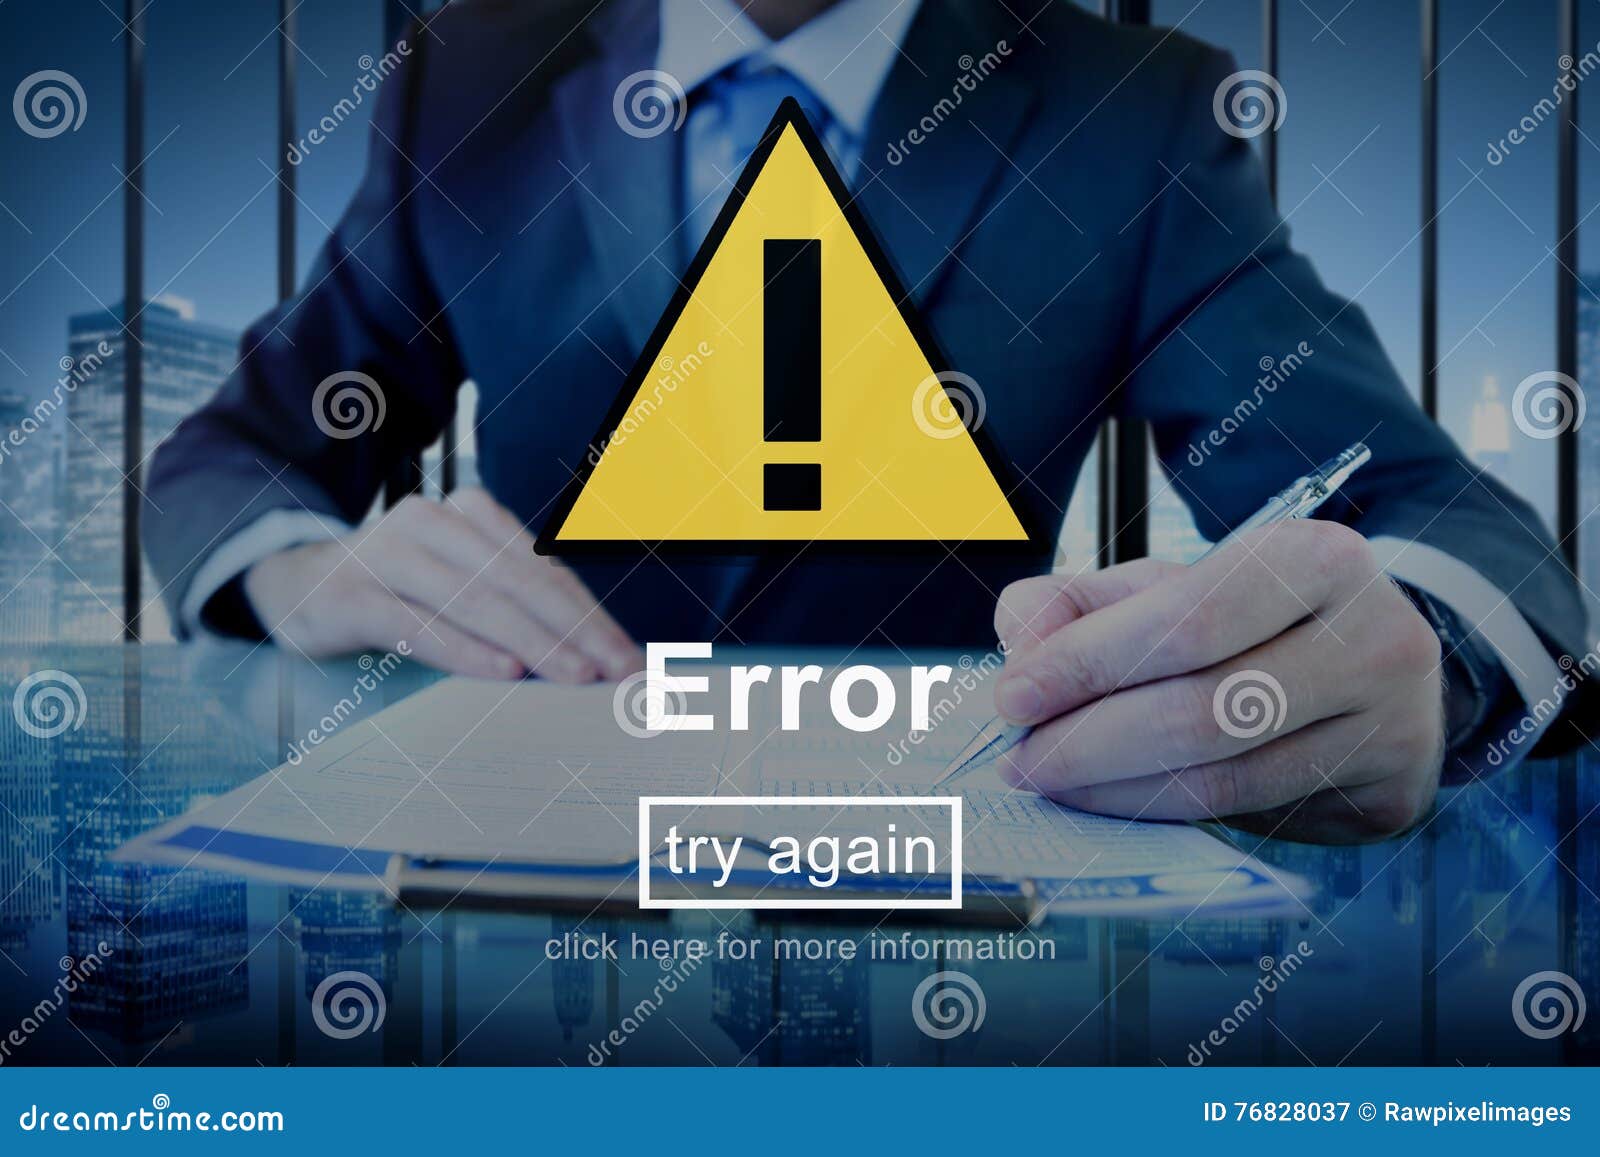 error mistake online reminder beware alert concept